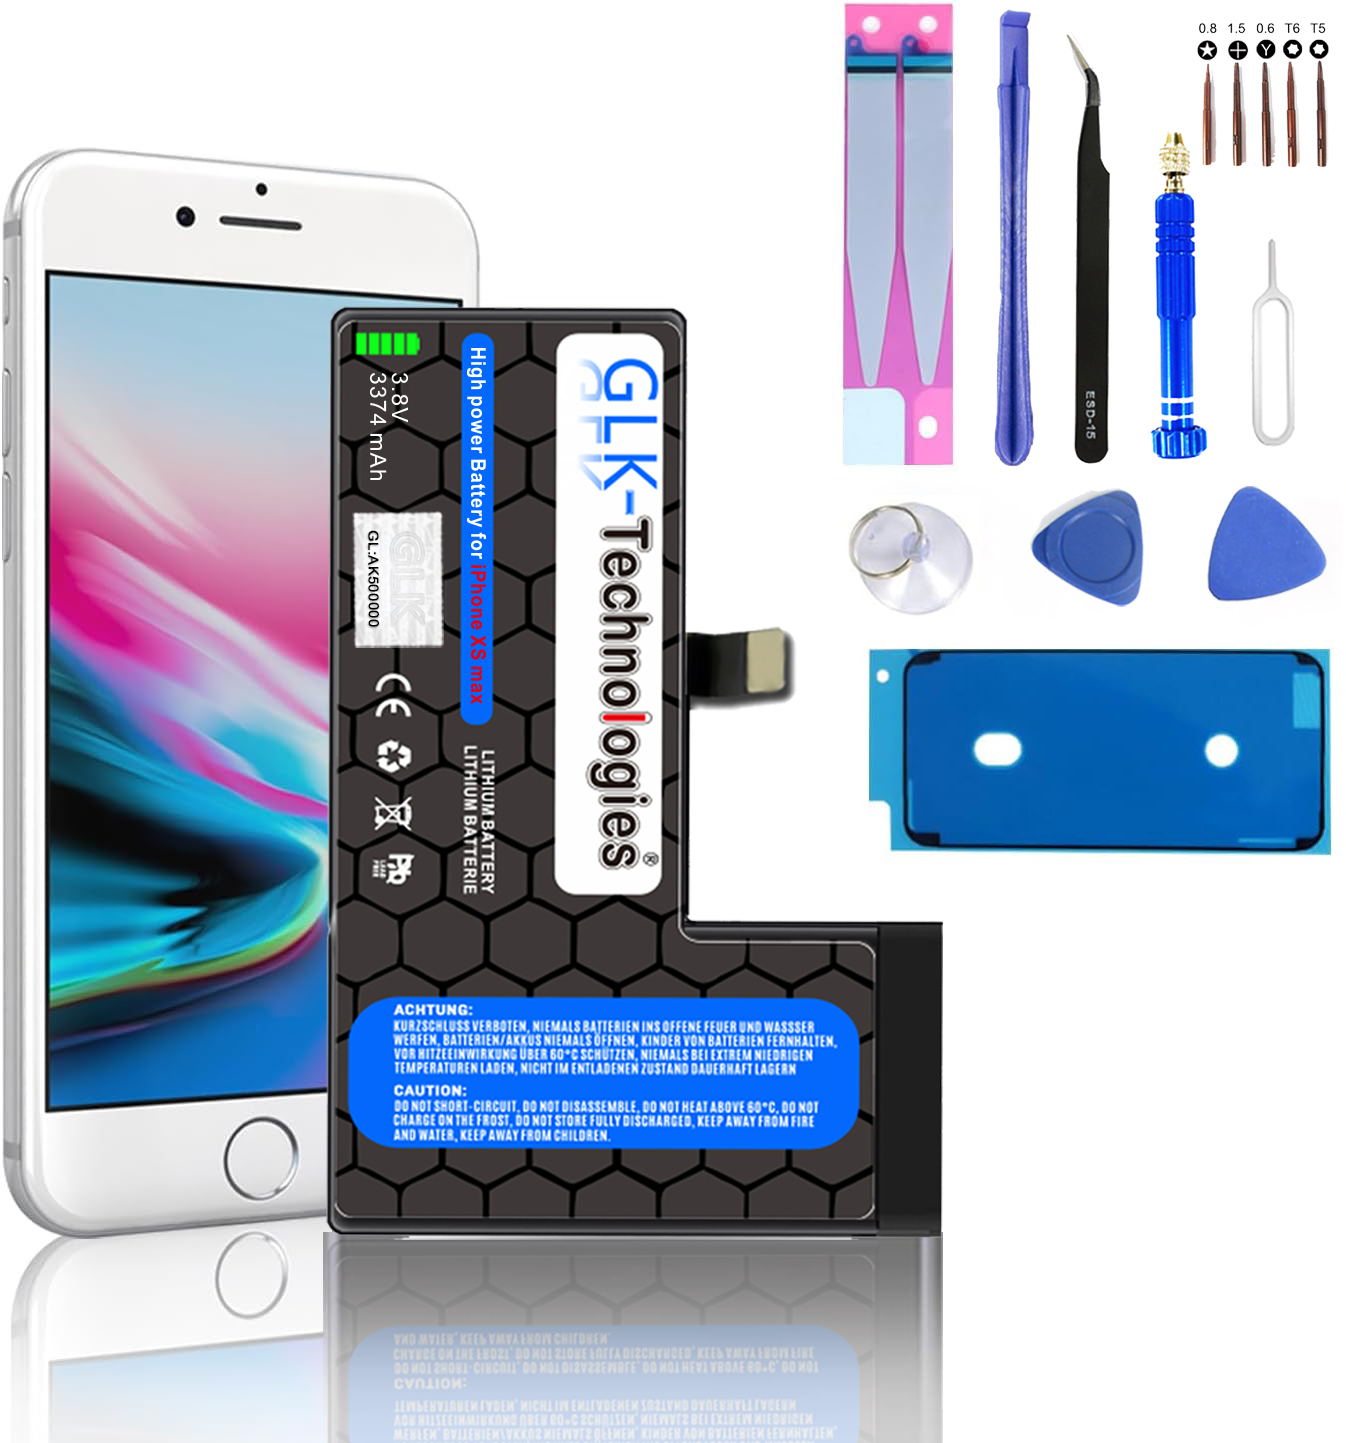 inkl. Lithium-Ionen-Akku MAX Smartphone XS mAh Werkzeug Ersatz Akku, iPhone 2930 GLK-TECHNOLOGIES PROFI